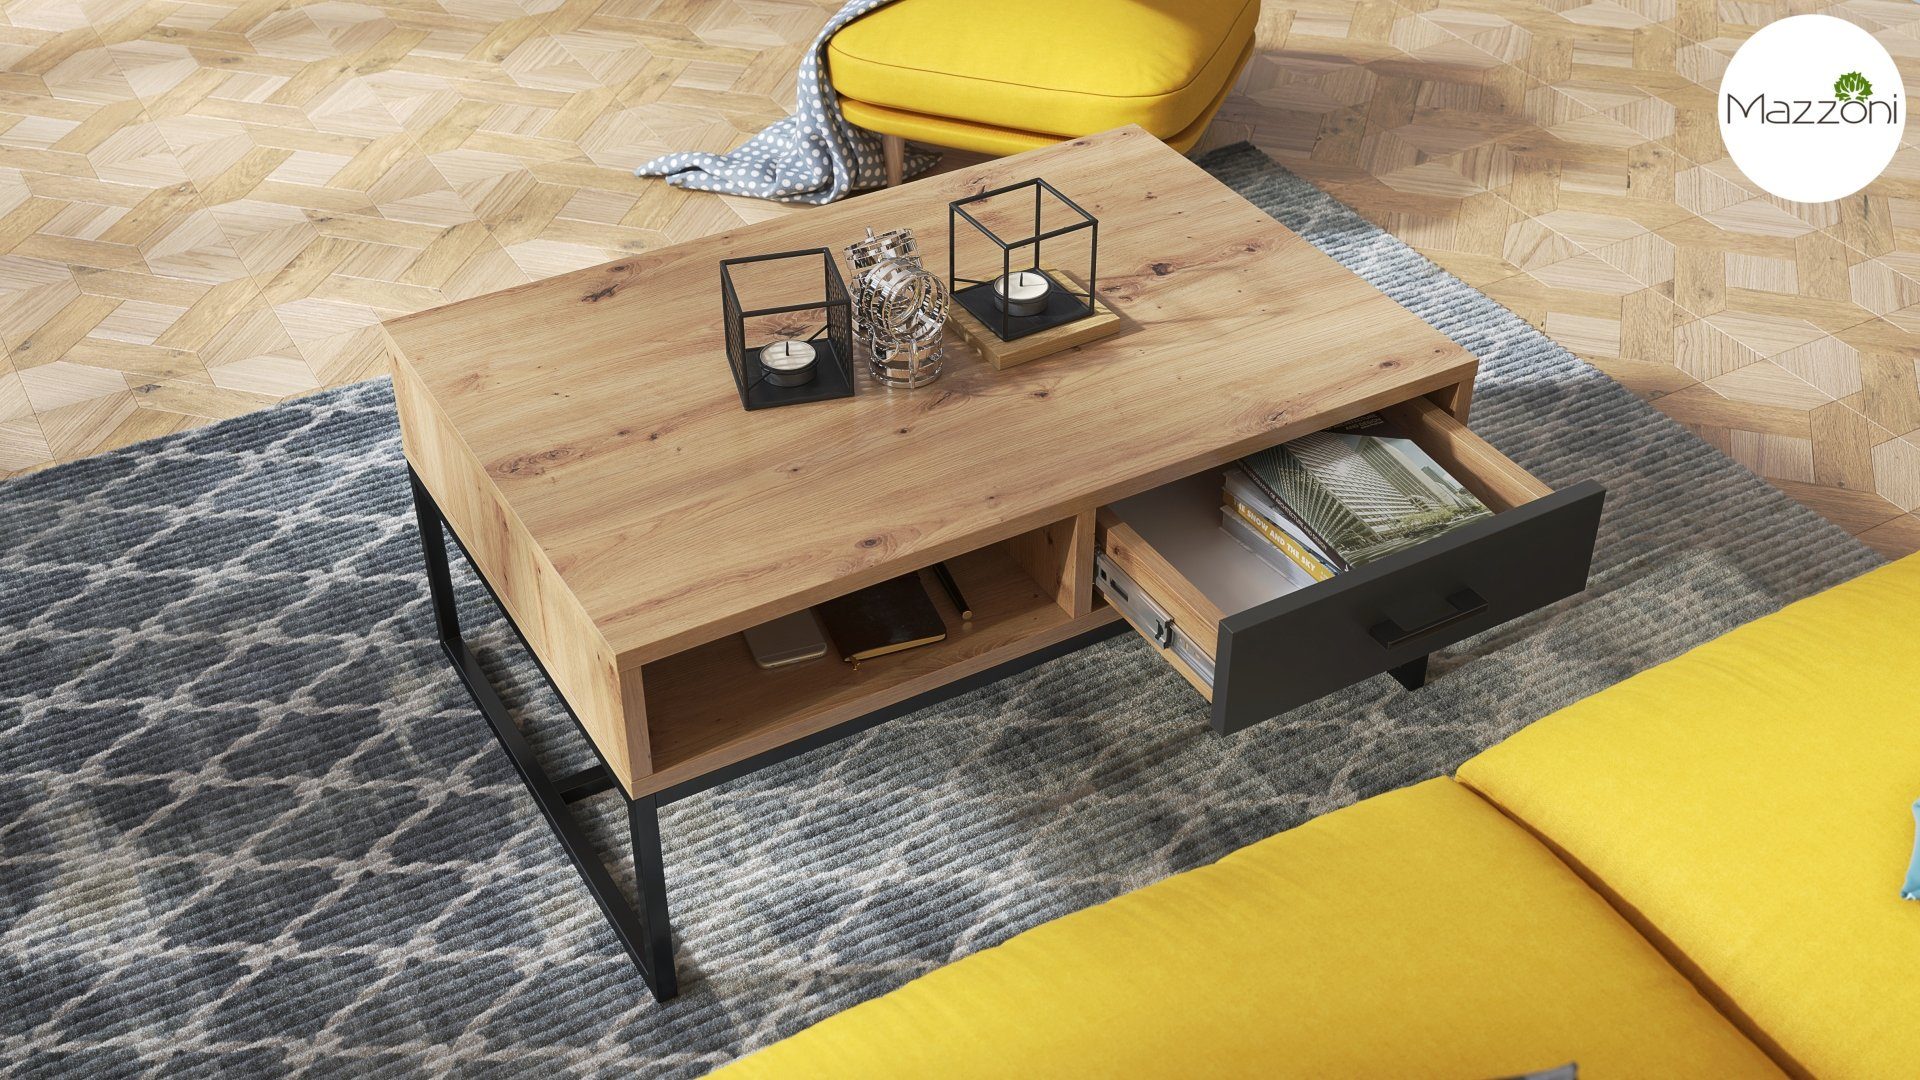 / Nyx 60x90x40cm Wohnzimmertisch Eiche mit Tisch Schublade Anthrazit Mazzoni matt Design Couchtisch Artisan Ablage